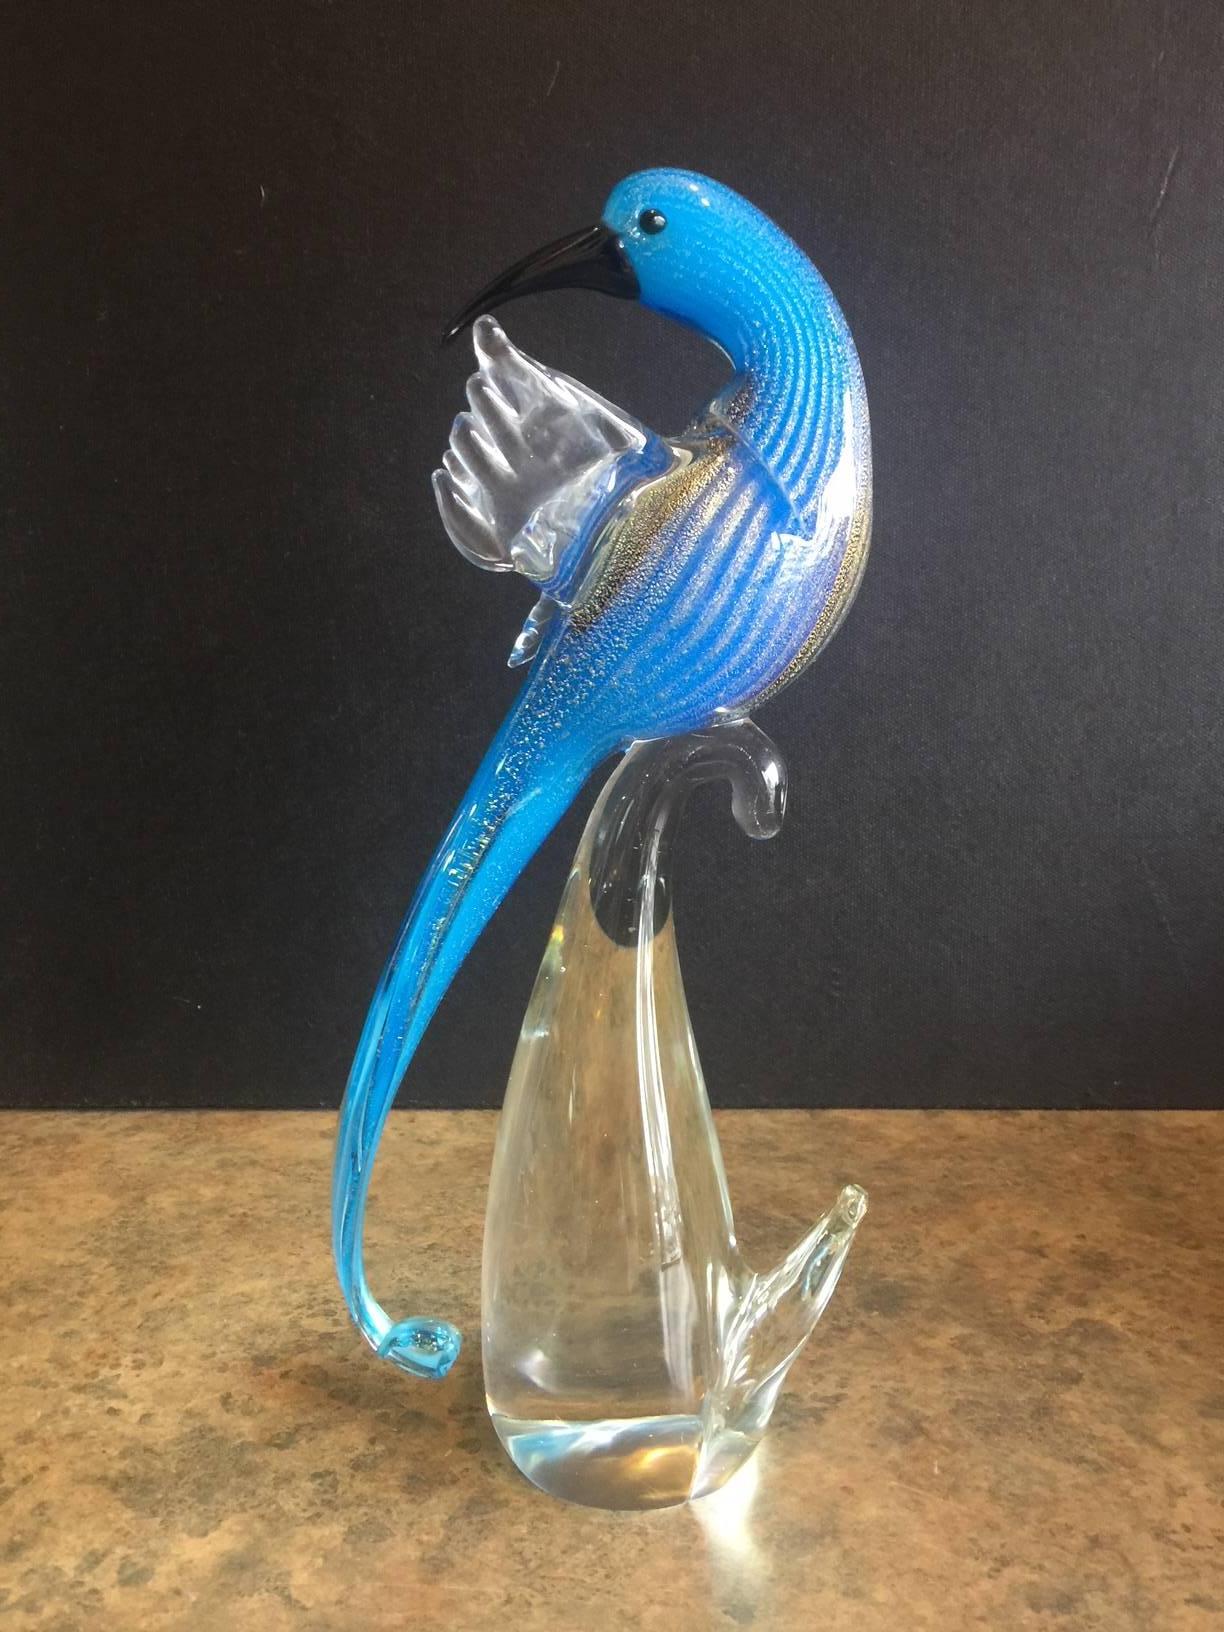 Mid-Century Modern Vibrant Parrot / Bird Art Glass Sculpture by Murano Glass, circa 1960s